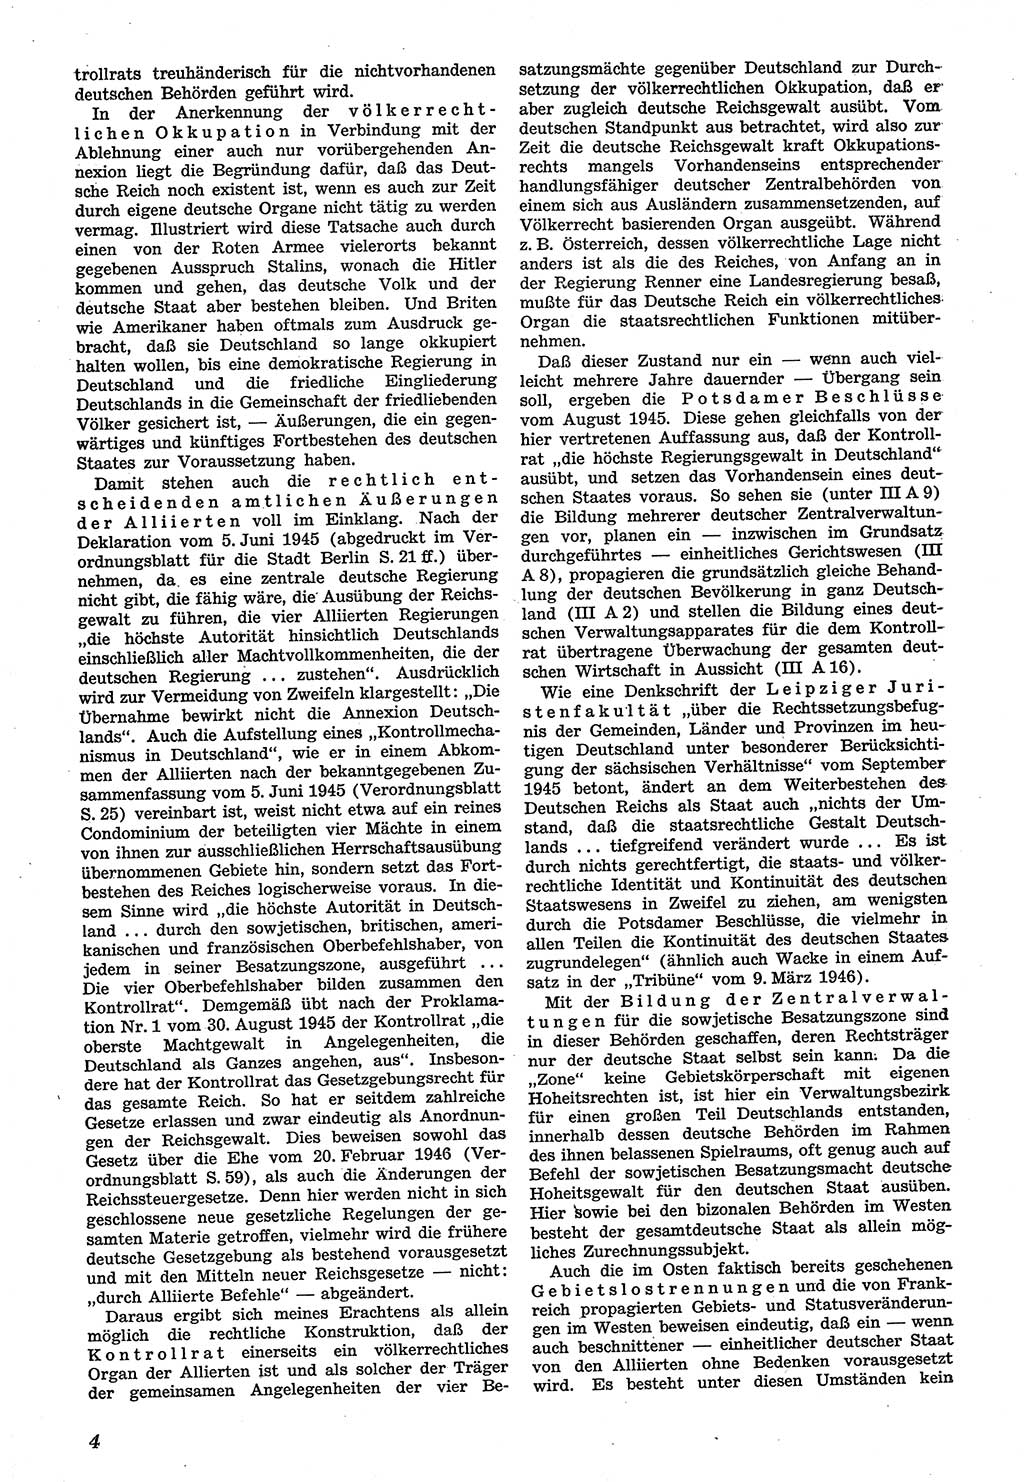 Neue Justiz (NJ), Zeitschrift für Recht und Rechtswissenschaft [Sowjetische Besatzungszone (SBZ) Deutschland], 1. Jahrgang 1947, Seite 4 (NJ SBZ Dtl. 1947, S. 4)